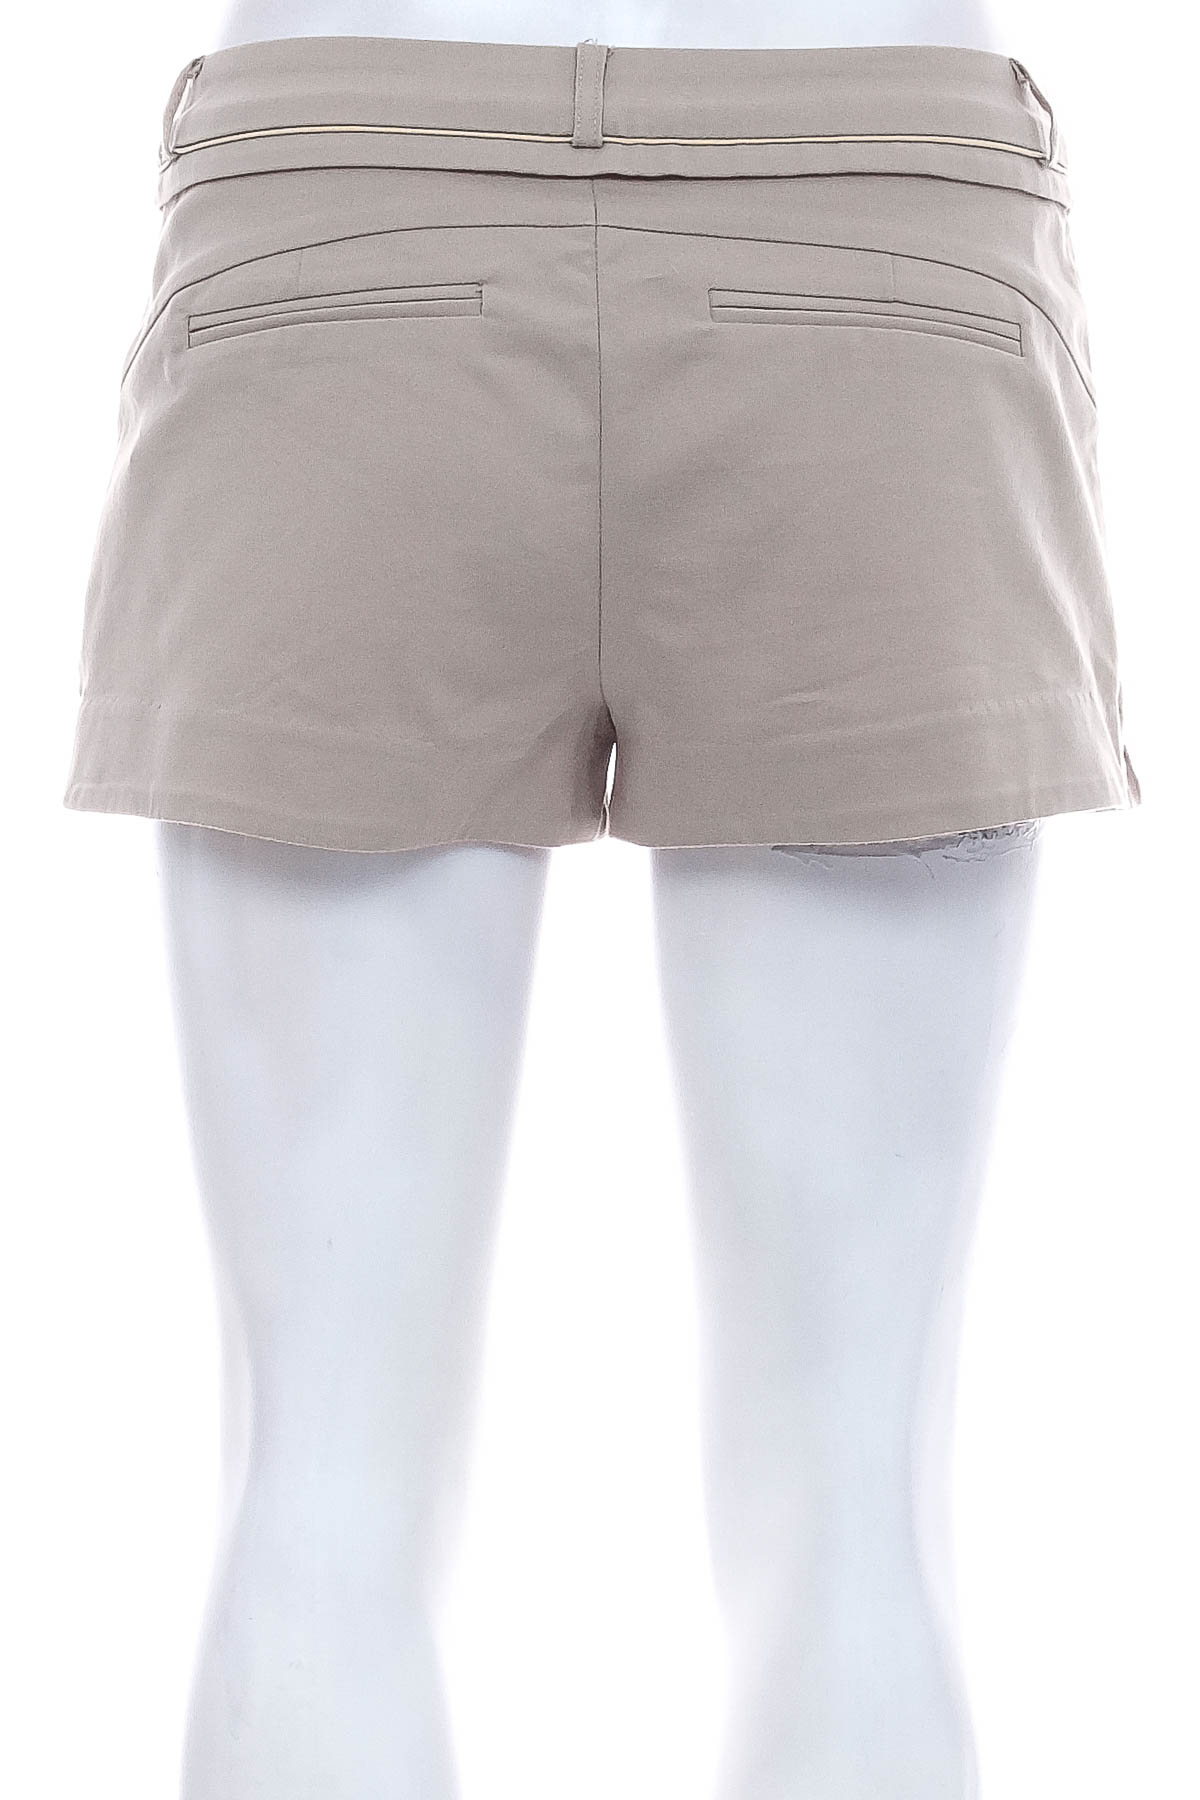 Female shorts - La Chapelle - 1